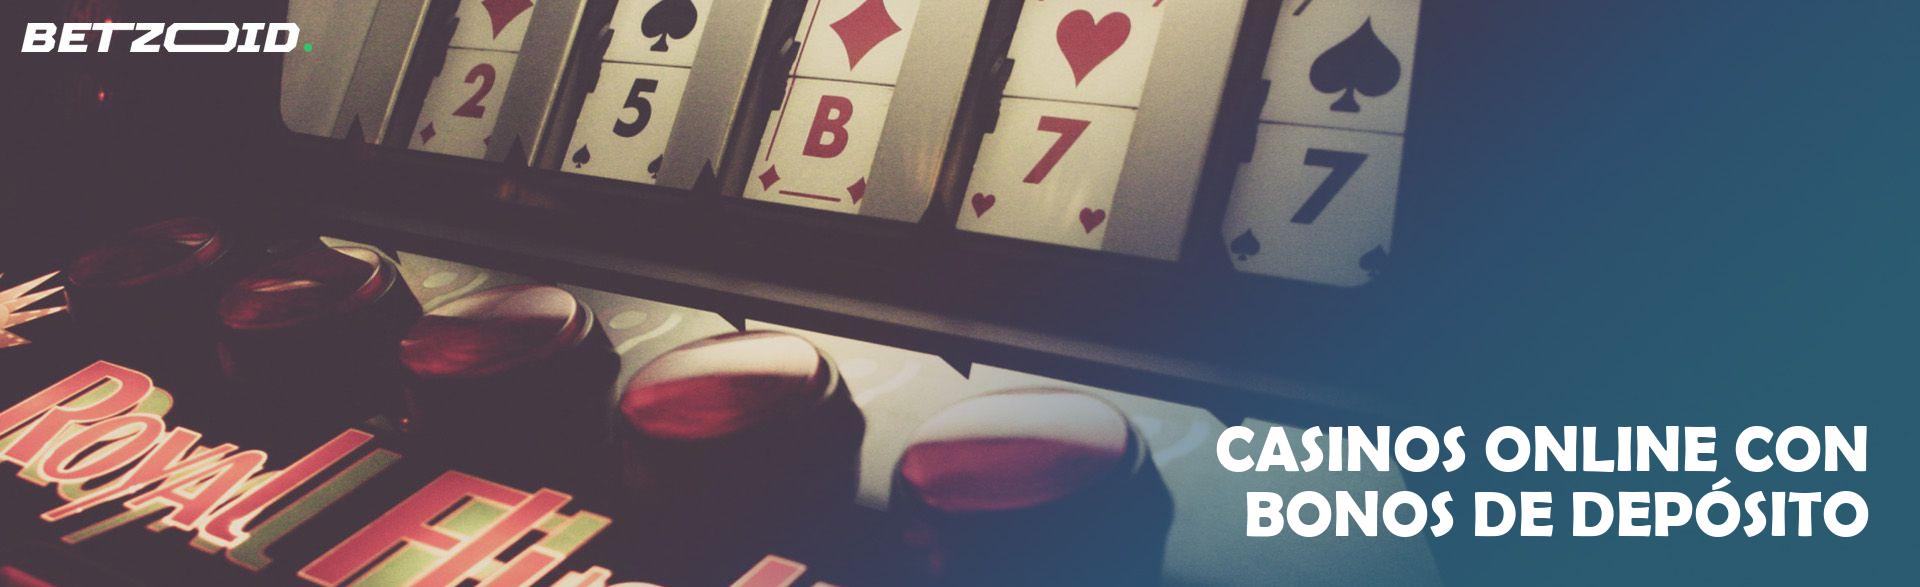 Casinos Online con Bonos de Depósito.